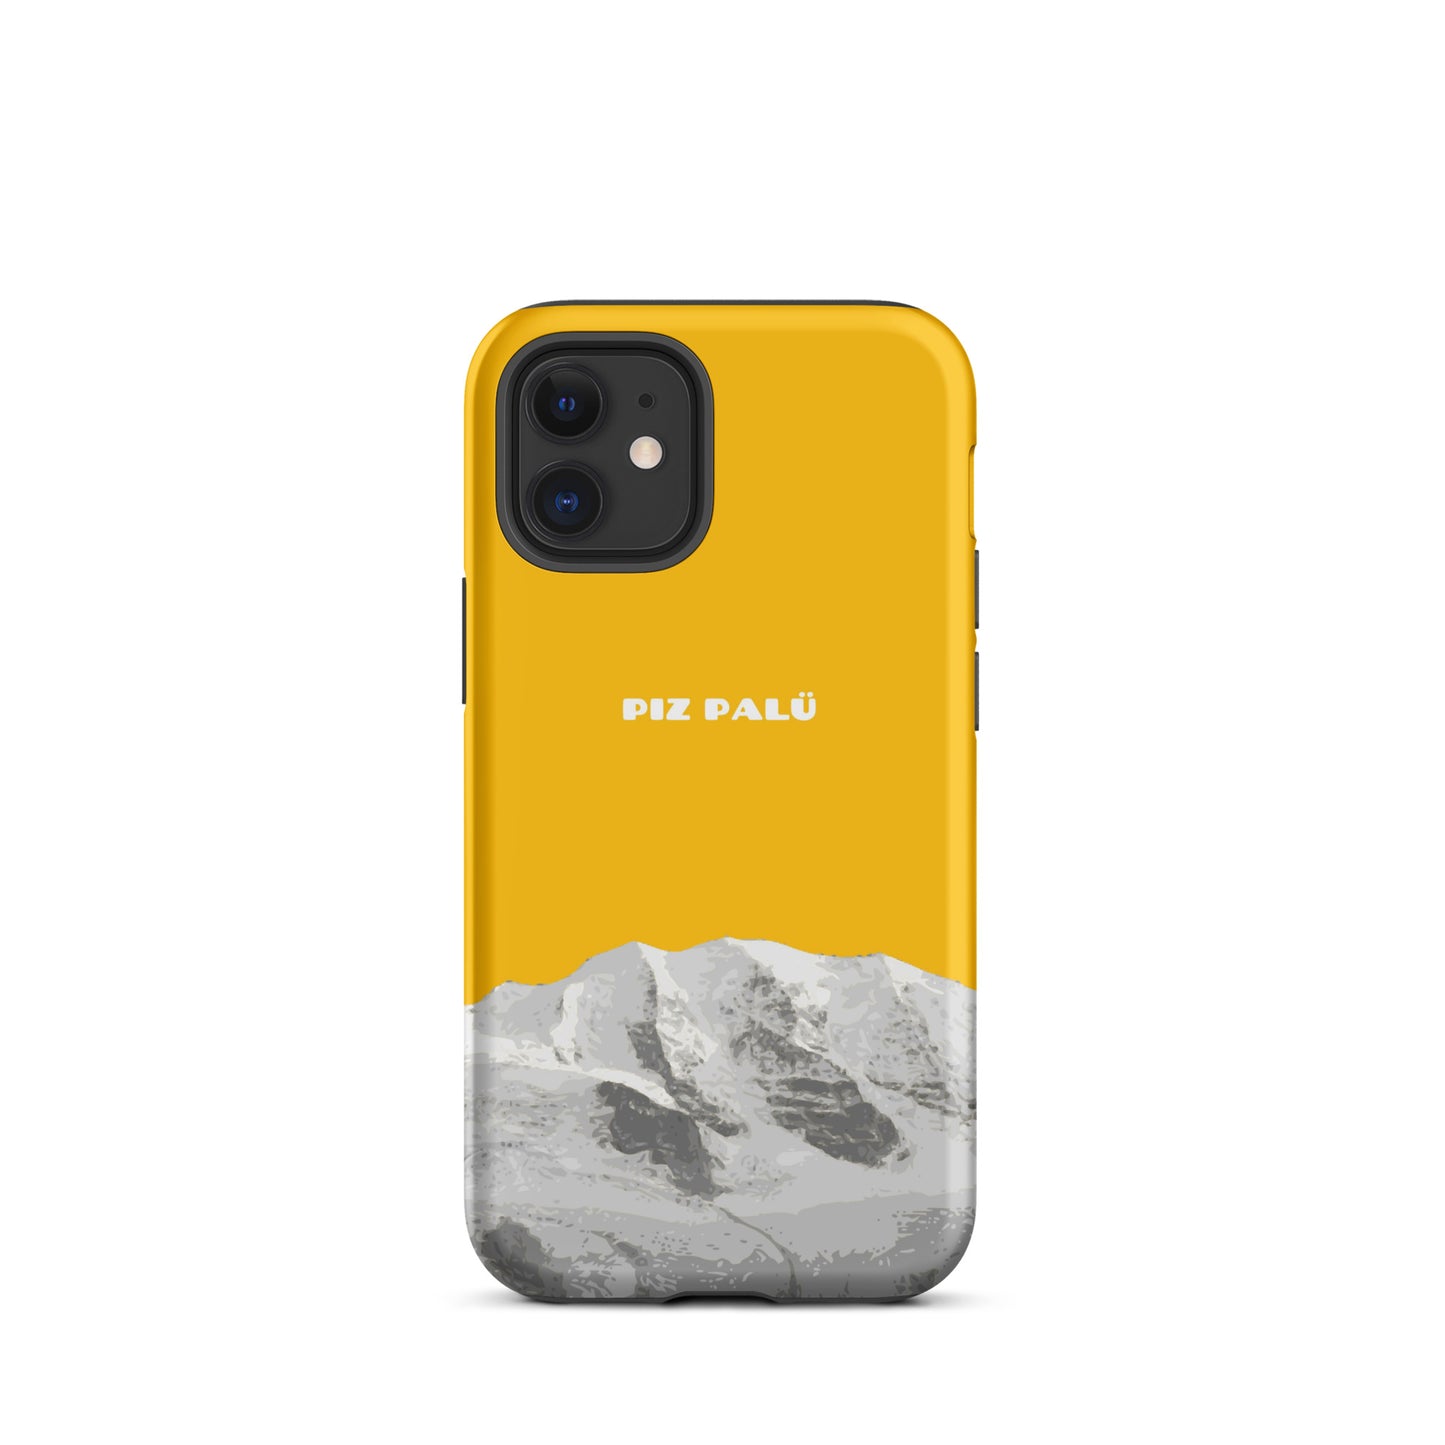 Hülle für das iPhone 12 mini von Apple in der Farbe Goldgelb, dass den Piz Palü in Graubünden zeigt.